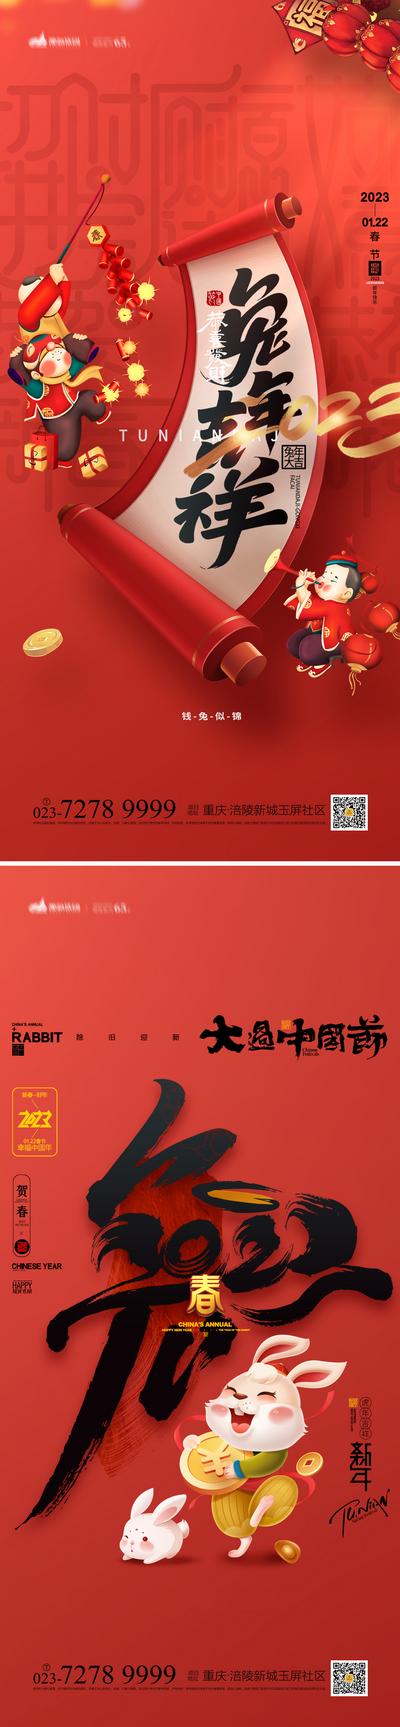 南门网 春节系列海报